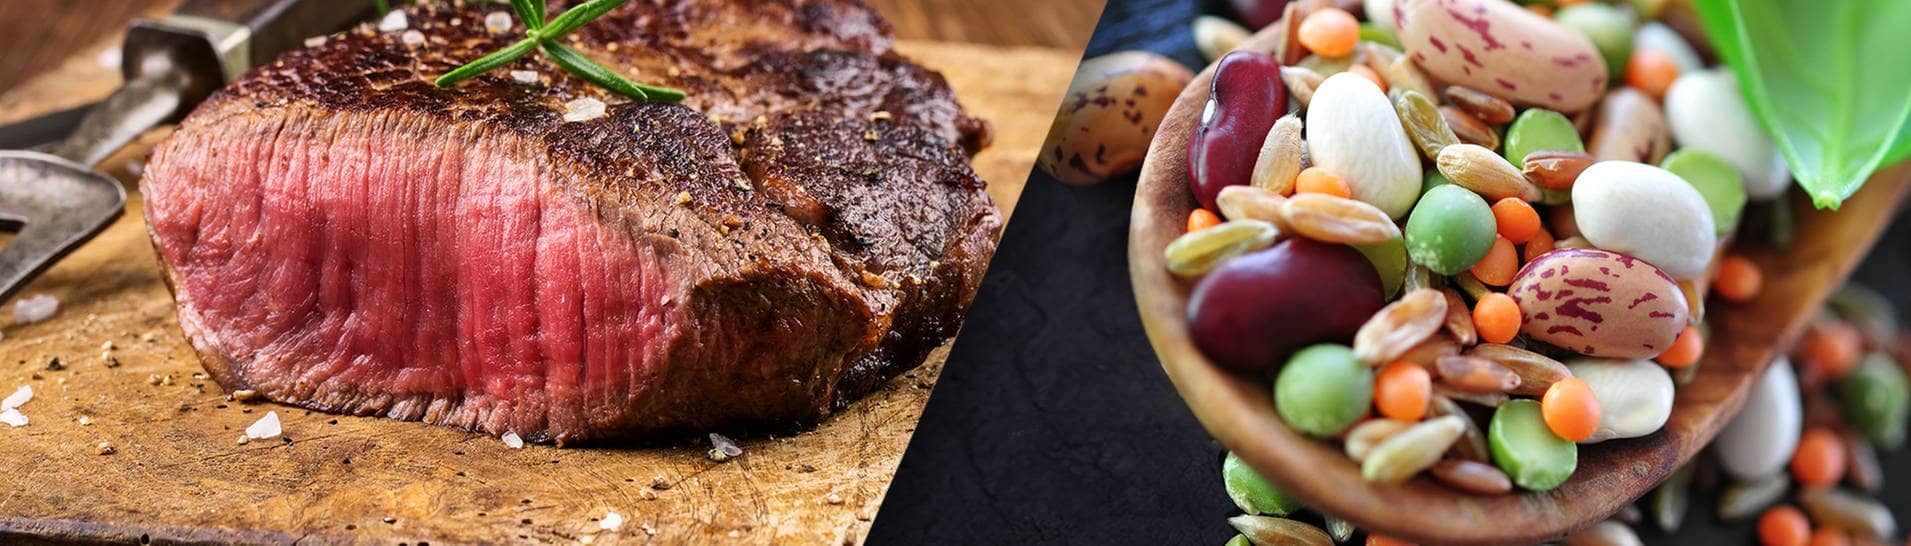 Fleisch vs. Fleischersatzprodukte – Was ist besser? (Foto: SWR3, Adobe: HLPhoto; photocrew)